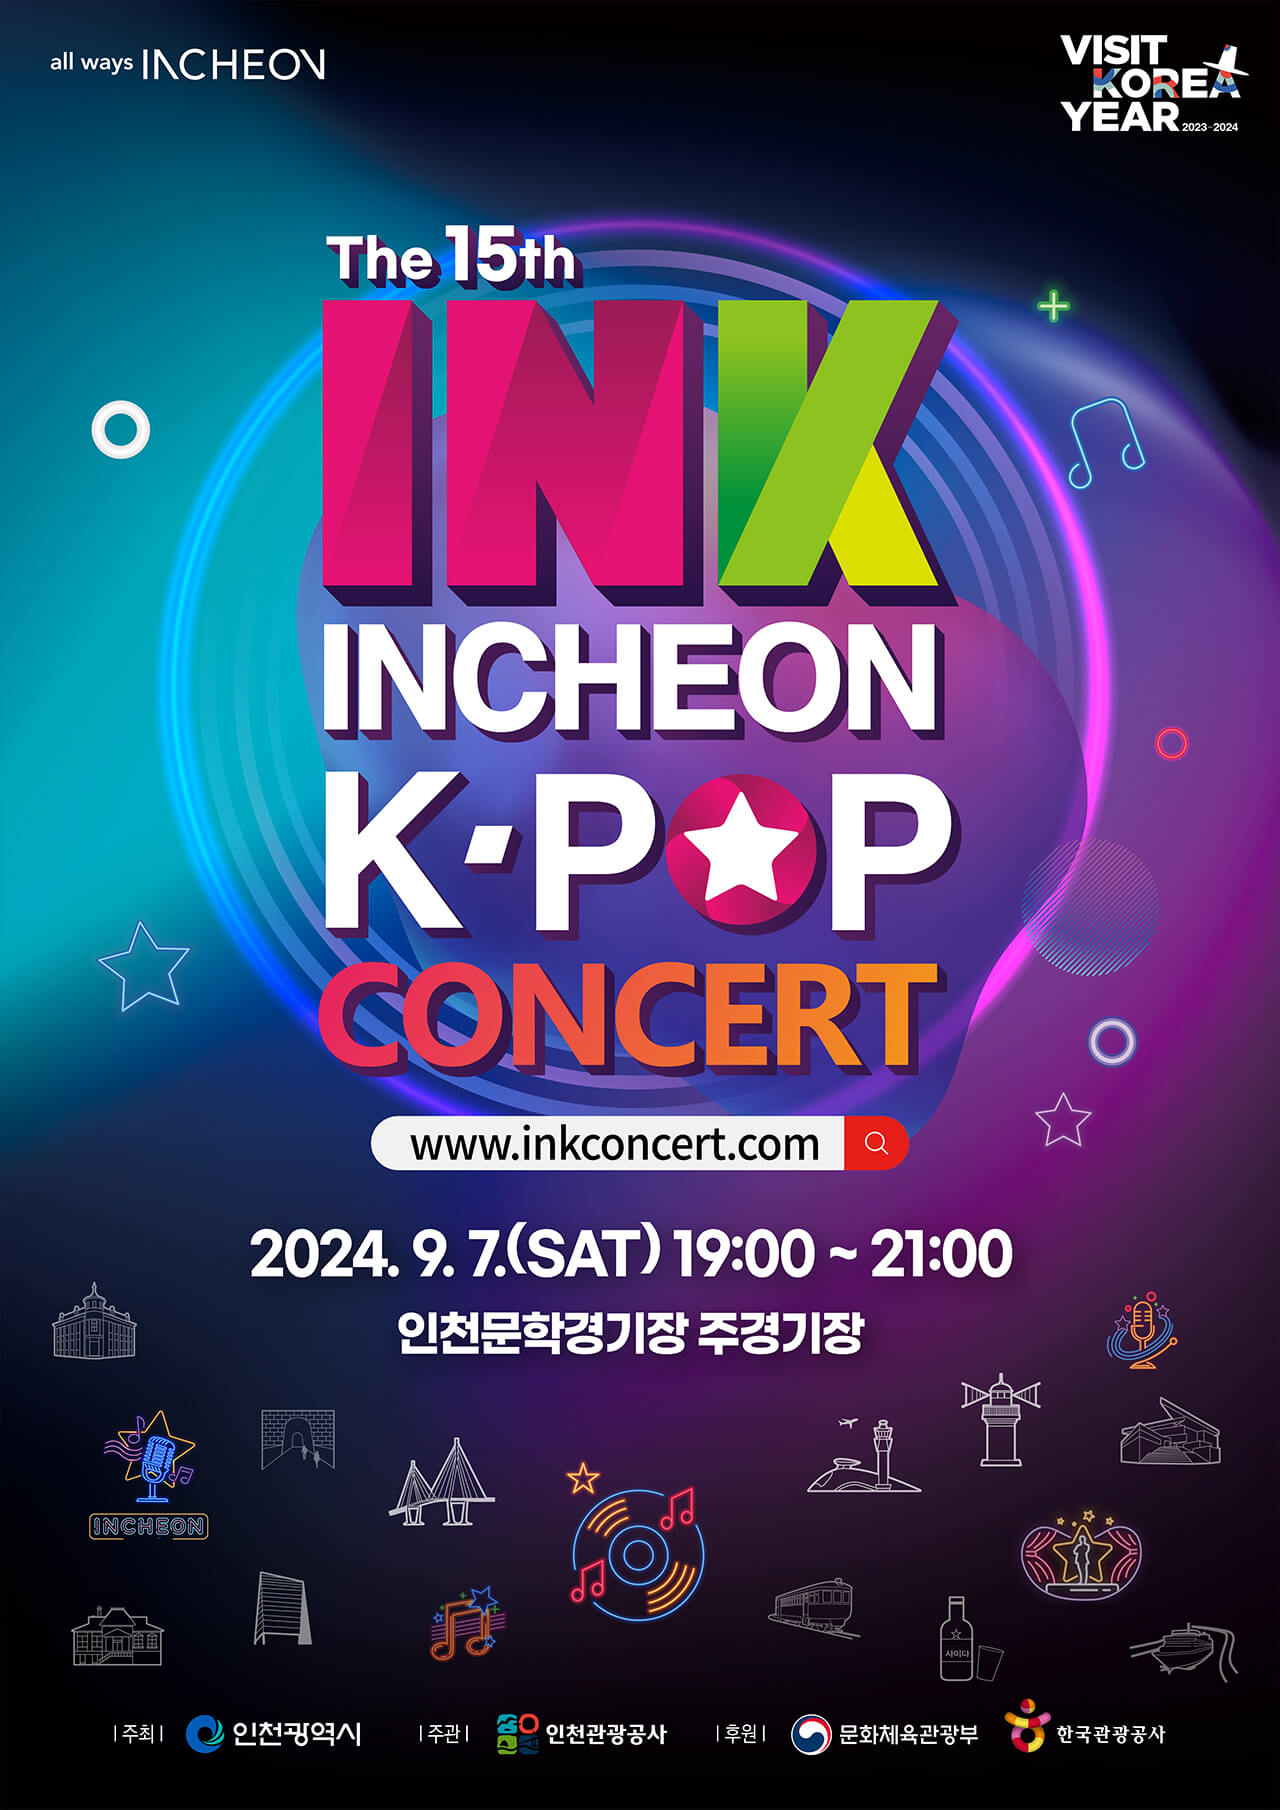 제 15회 INK 콘서트 INCHEON K-POP CONCERT